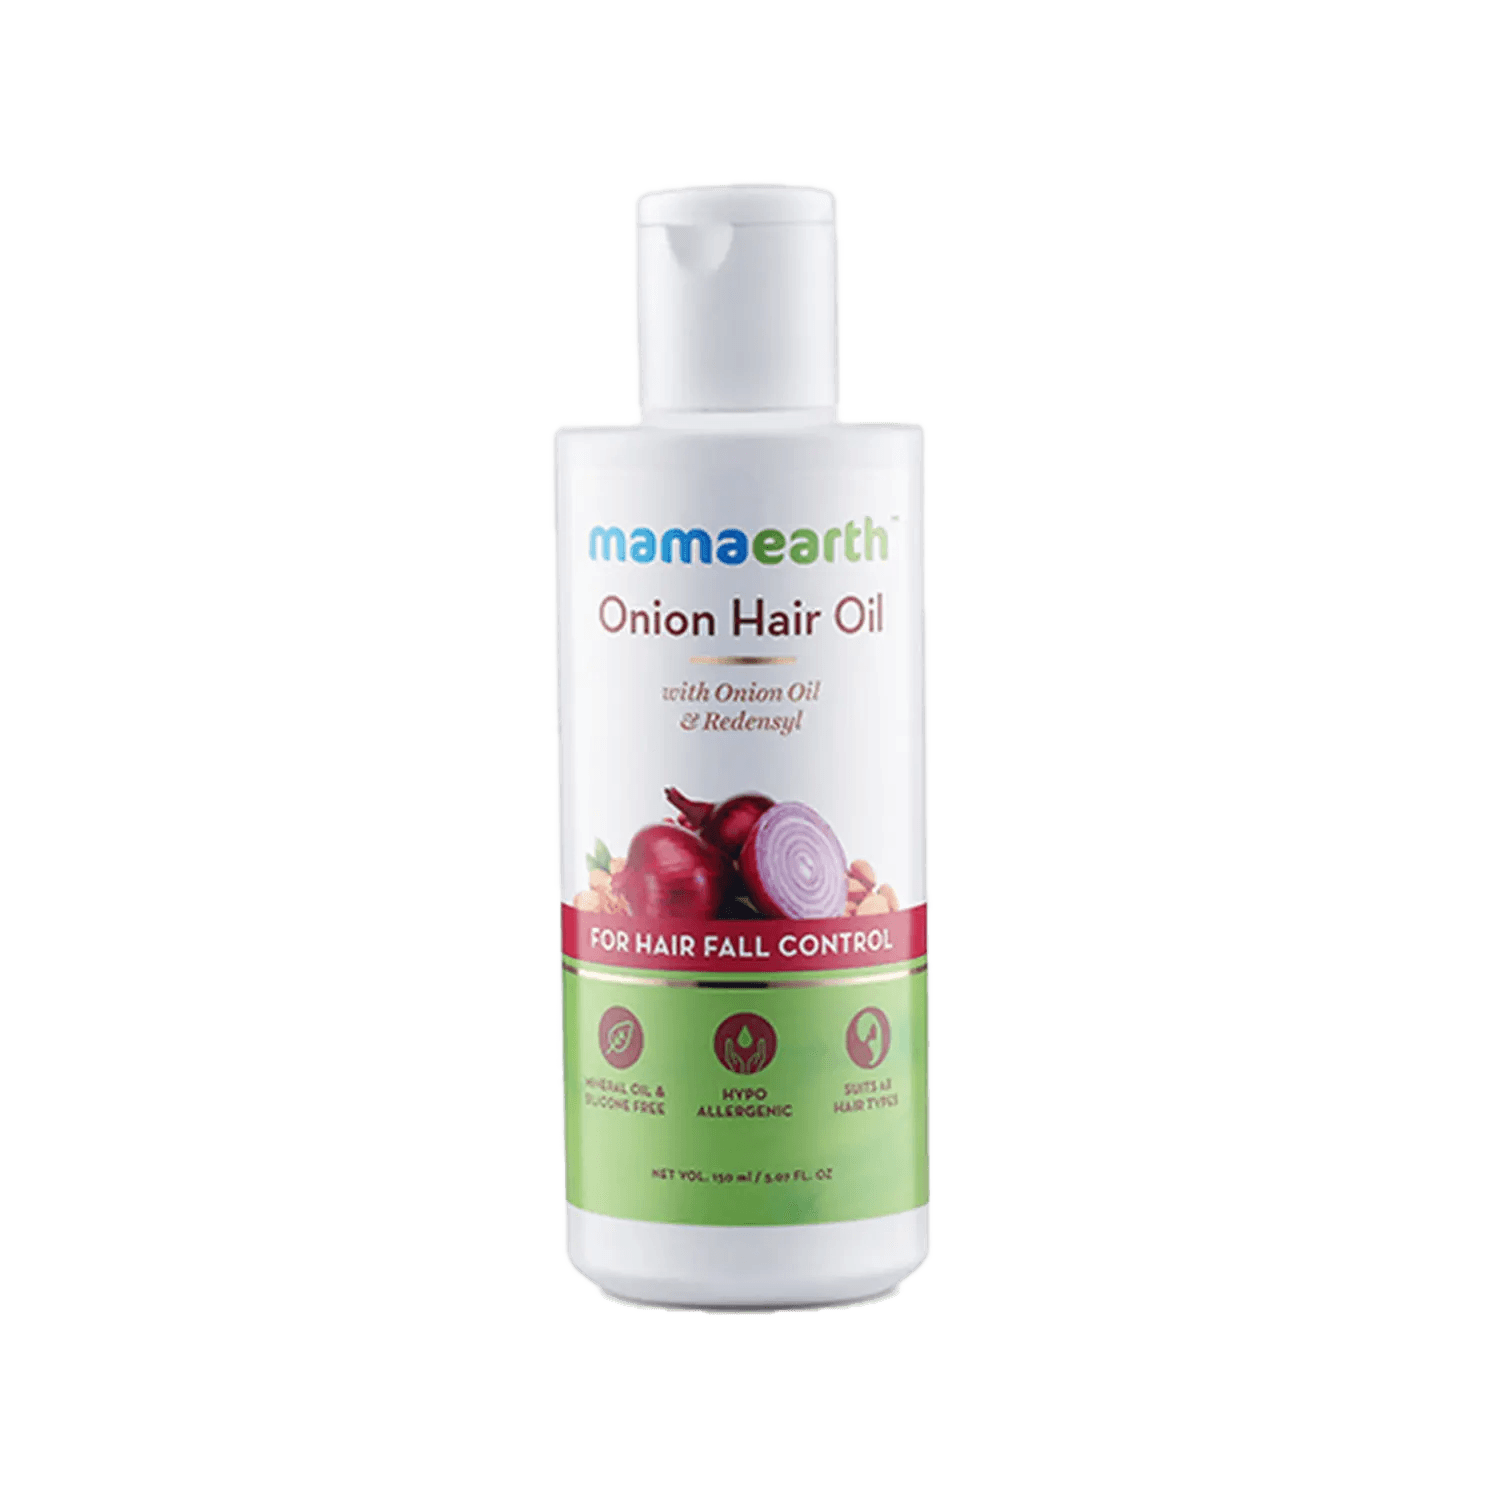 Mamaearth Onion Hair Oil For Hair Regrowth & Hair Fall Control (150ml)